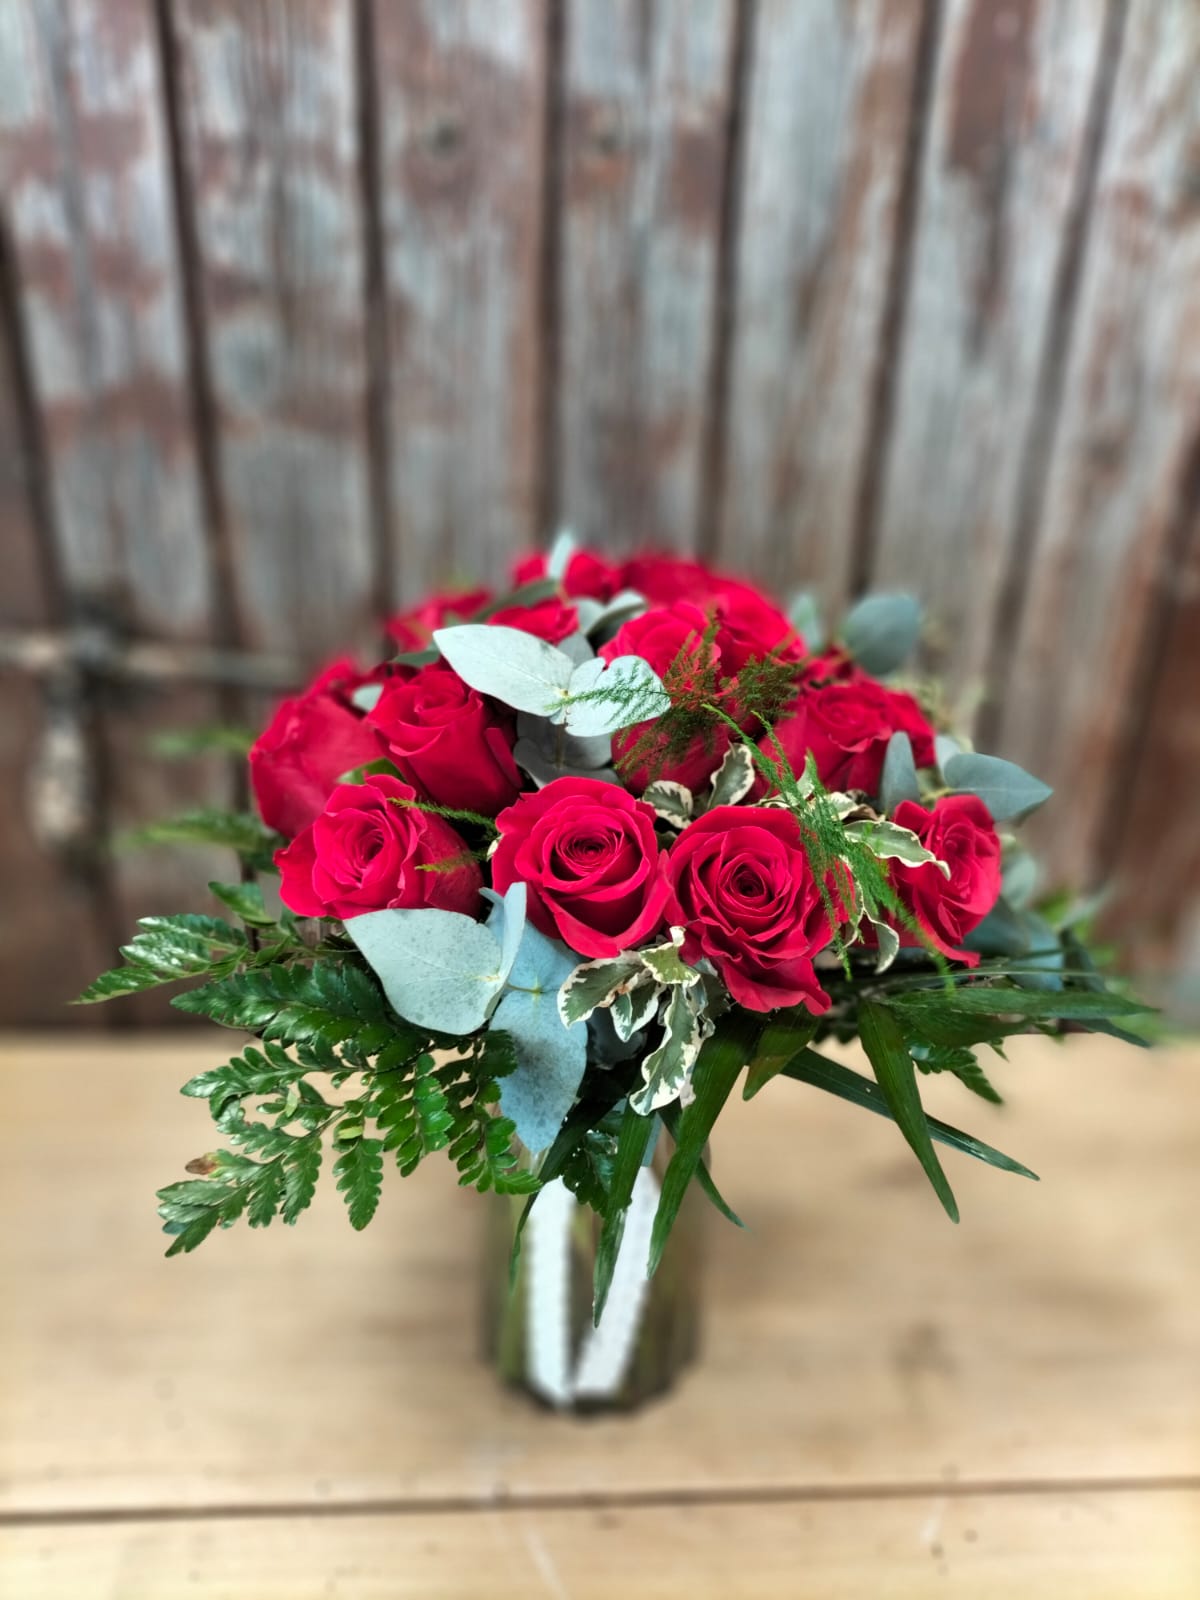 Bouquet de rose avec chocolat❤❤ - Bouquet de Fleurs